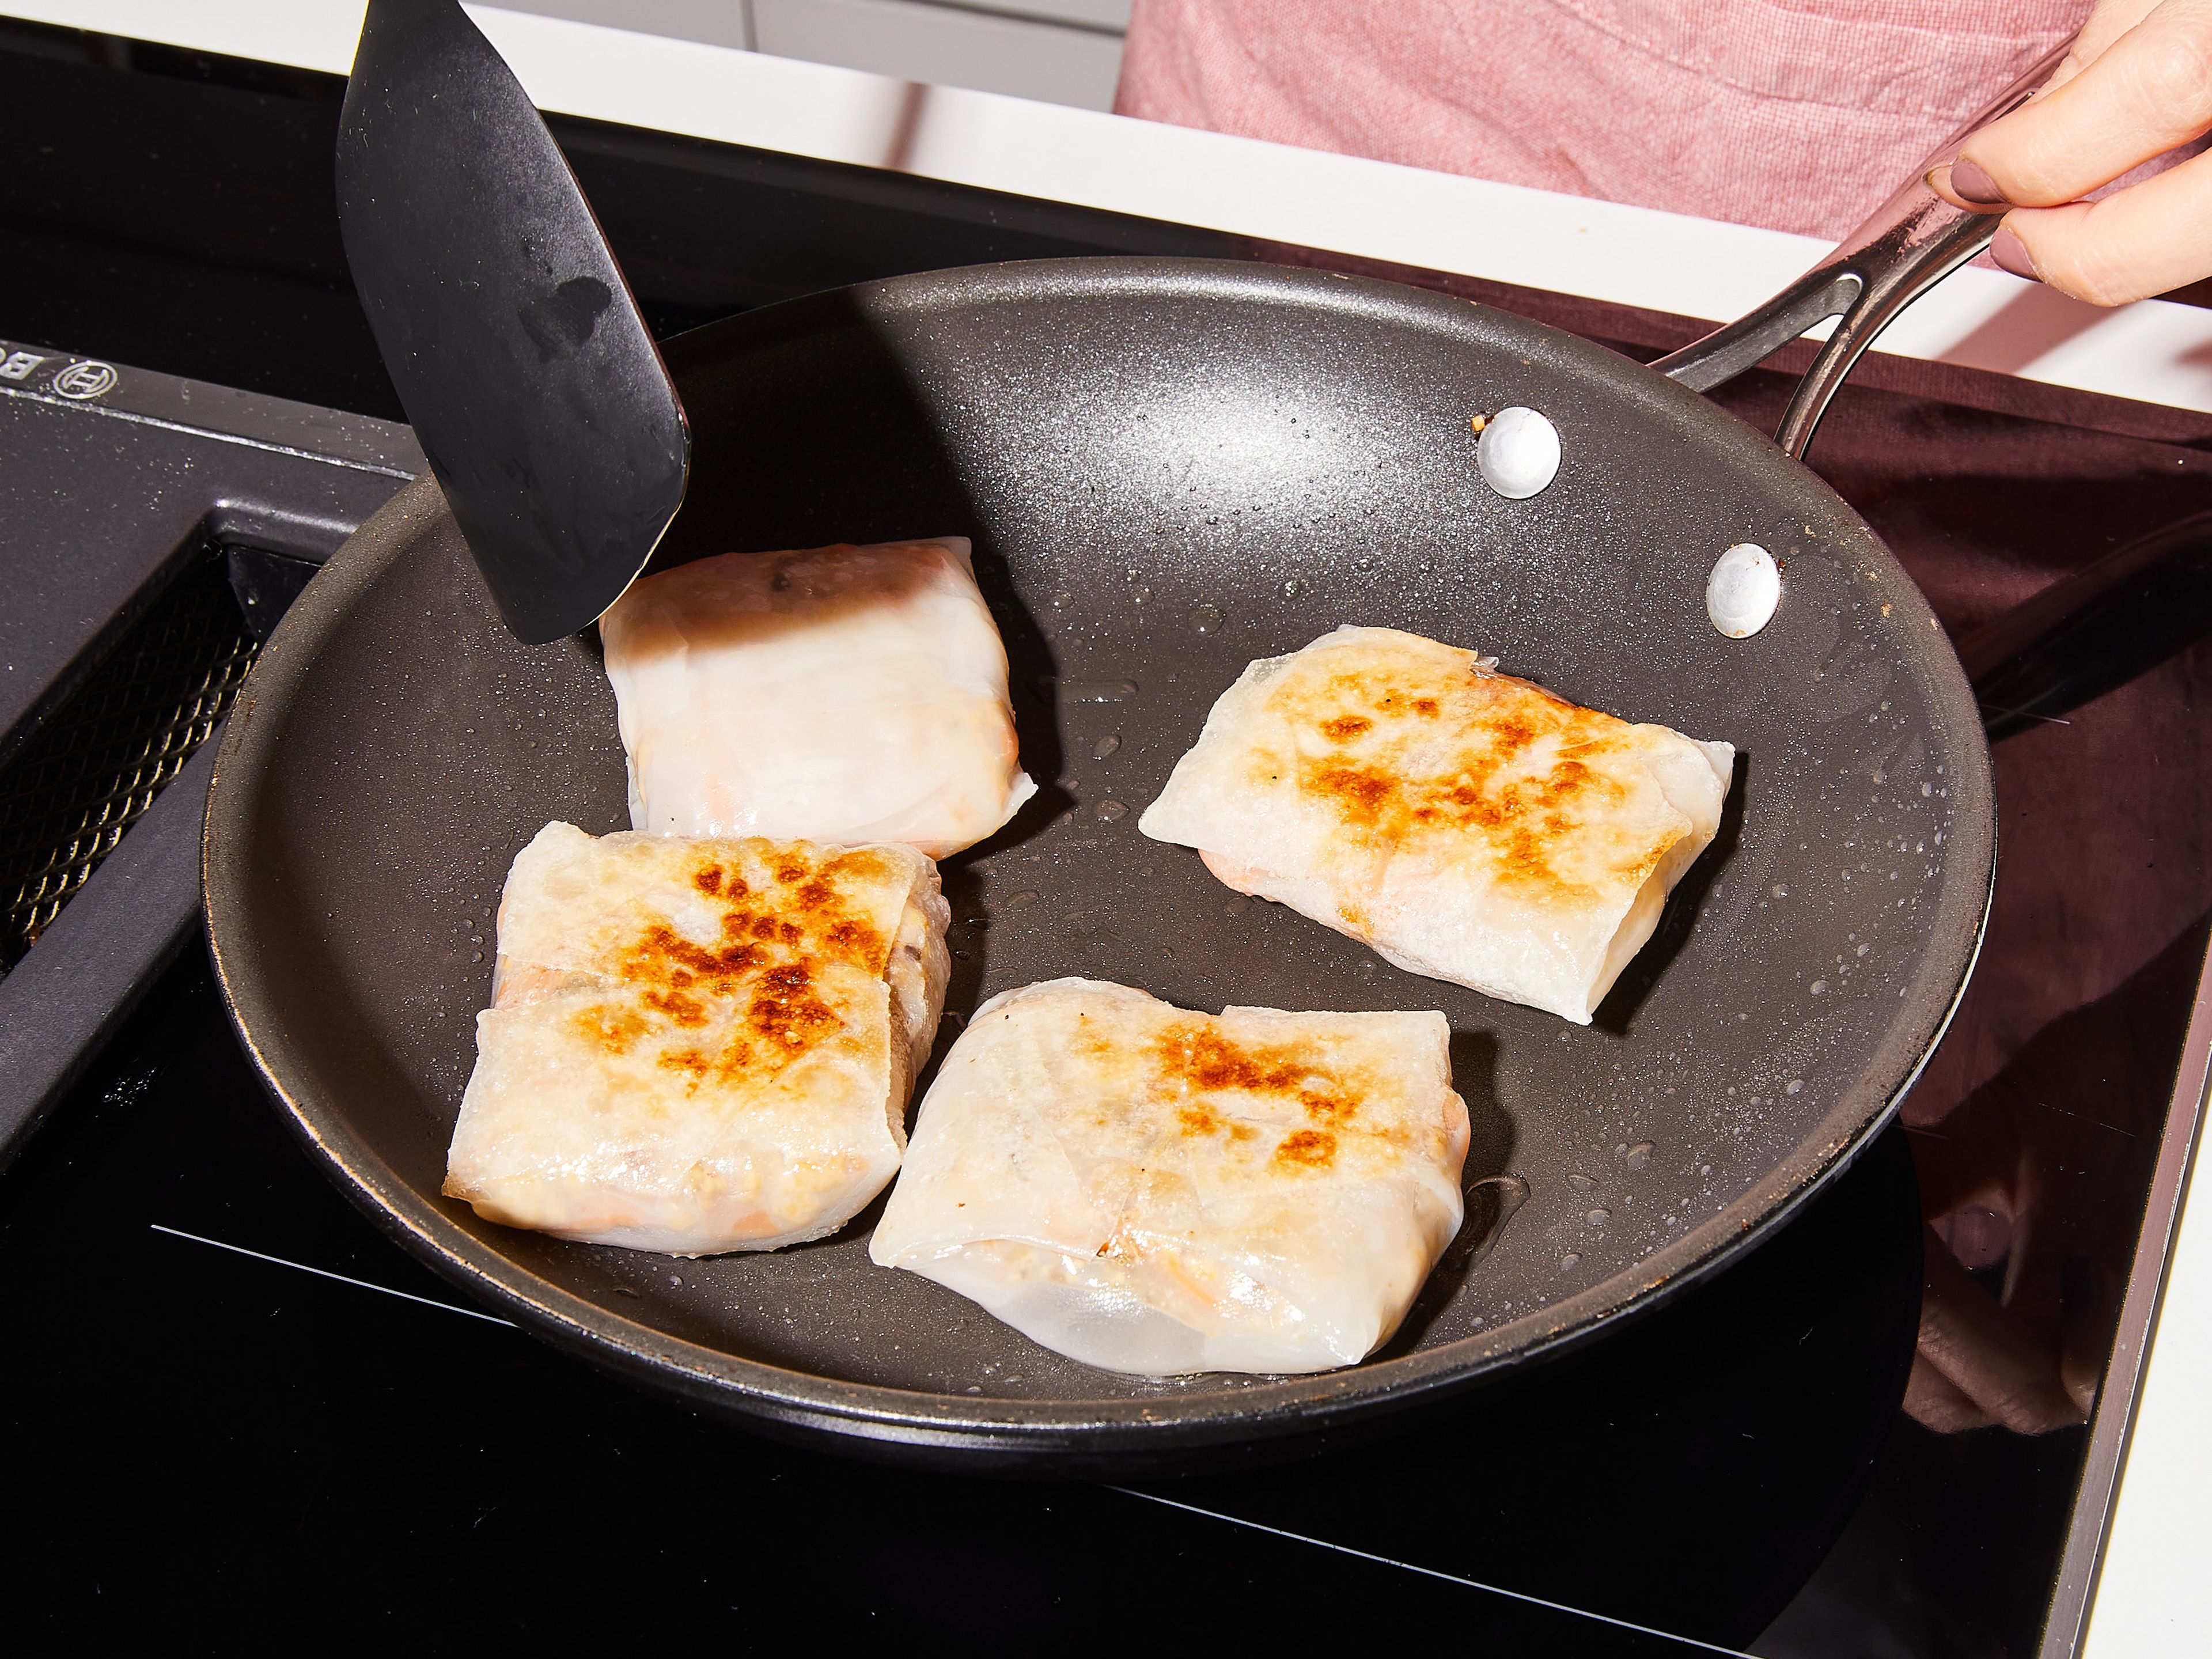 Übriges Sesamöl in die Pfanne geben und bei mittlerer Stufe erhitzen. Dumplings darin von beiden Seiten knusprig braten, insgesamt ca. 8 Min. Sofort mit Chiliöl mit gerösteten Chilistücken servieren. Guten Appetit!